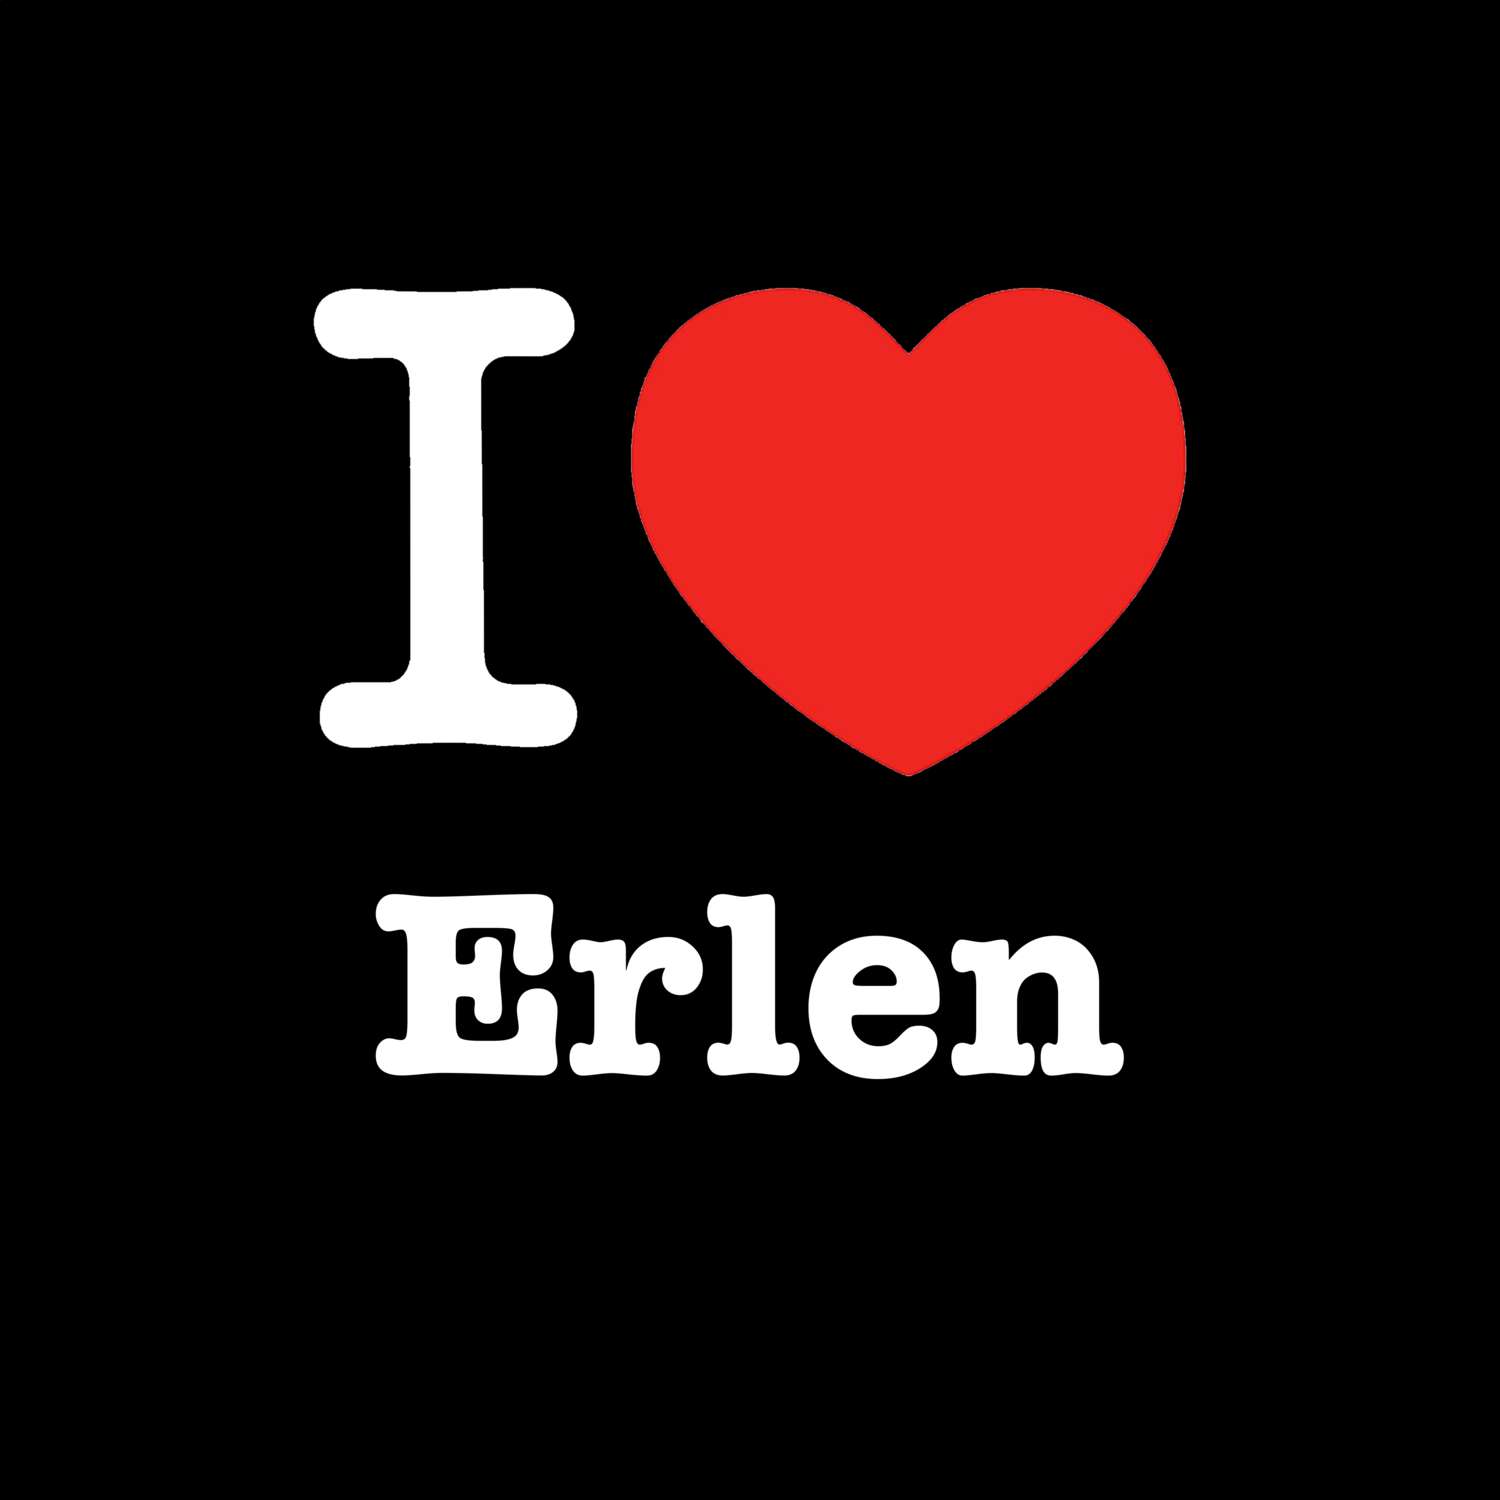 Erlen T-Shirt »I love«